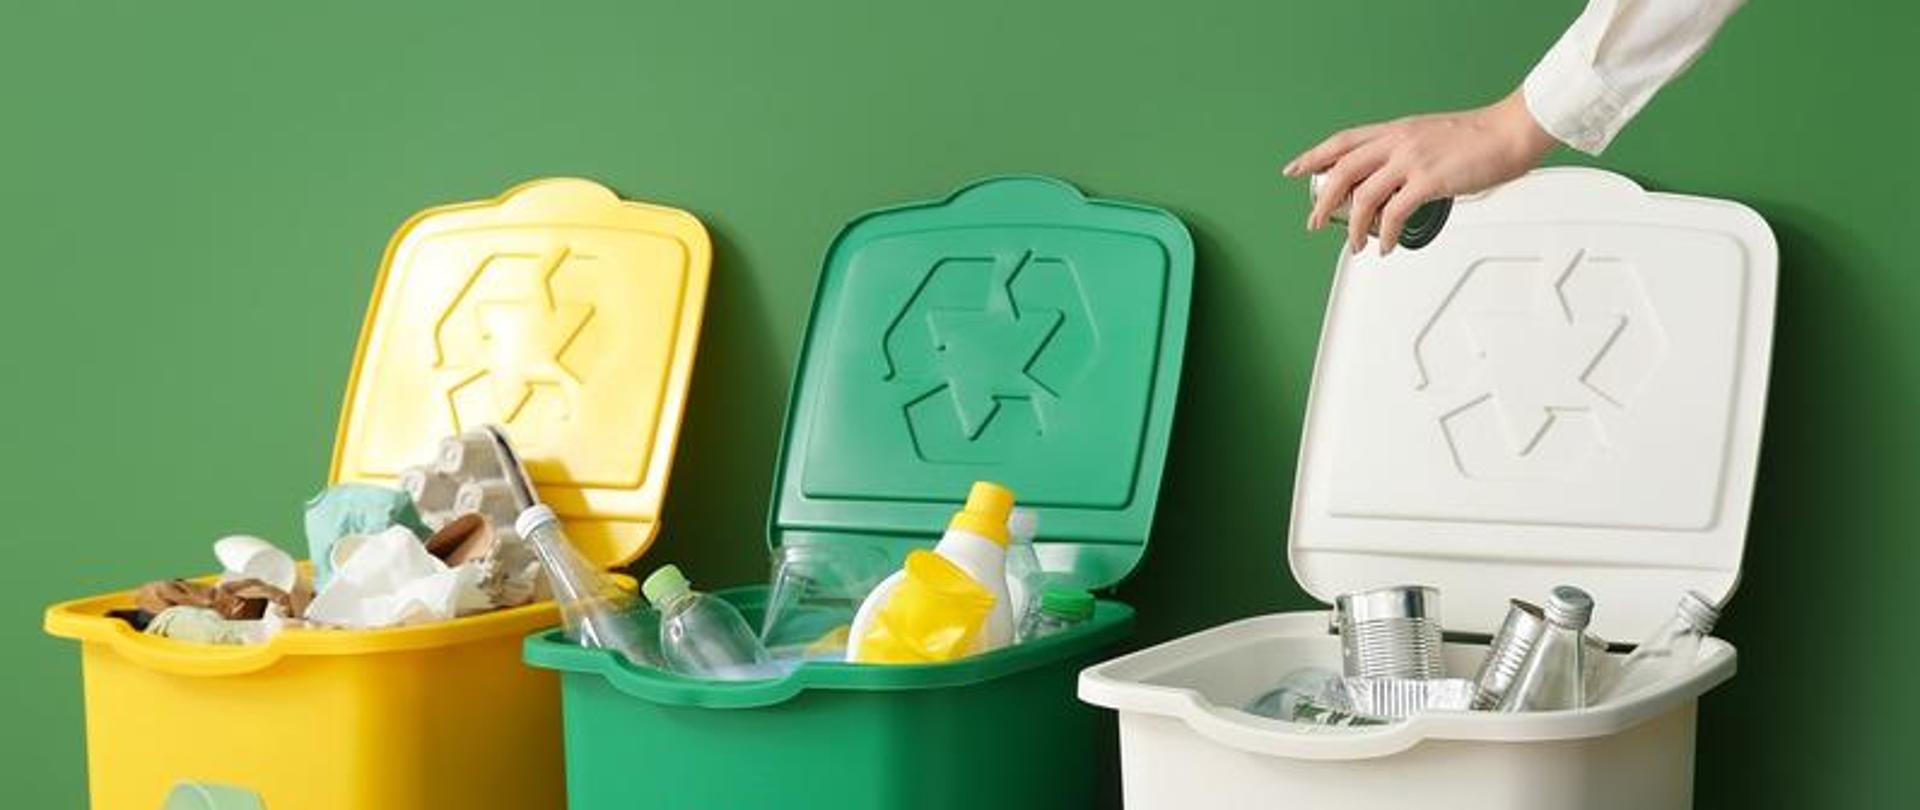 Zdjęcie przedstawia trzy pojemniki na odpady w kolorze żółtym, zielonym i białym, oraz dłoń wrzucającą odpady do pojemnika. 